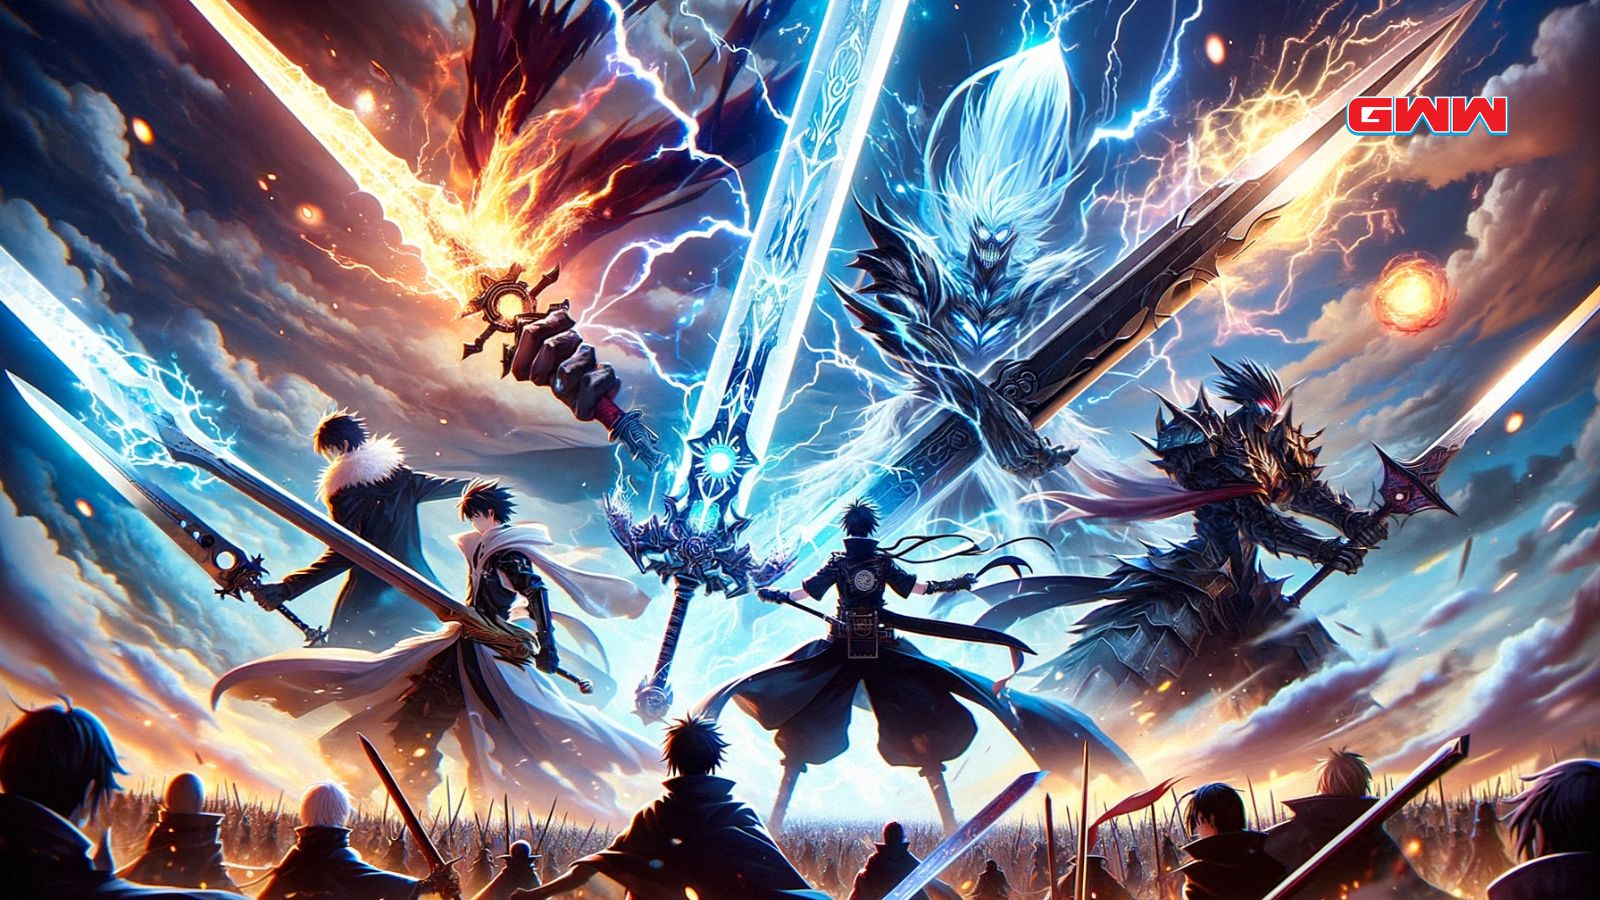 Personajes de anime en batalla con espadas místicas de anime y elementos.